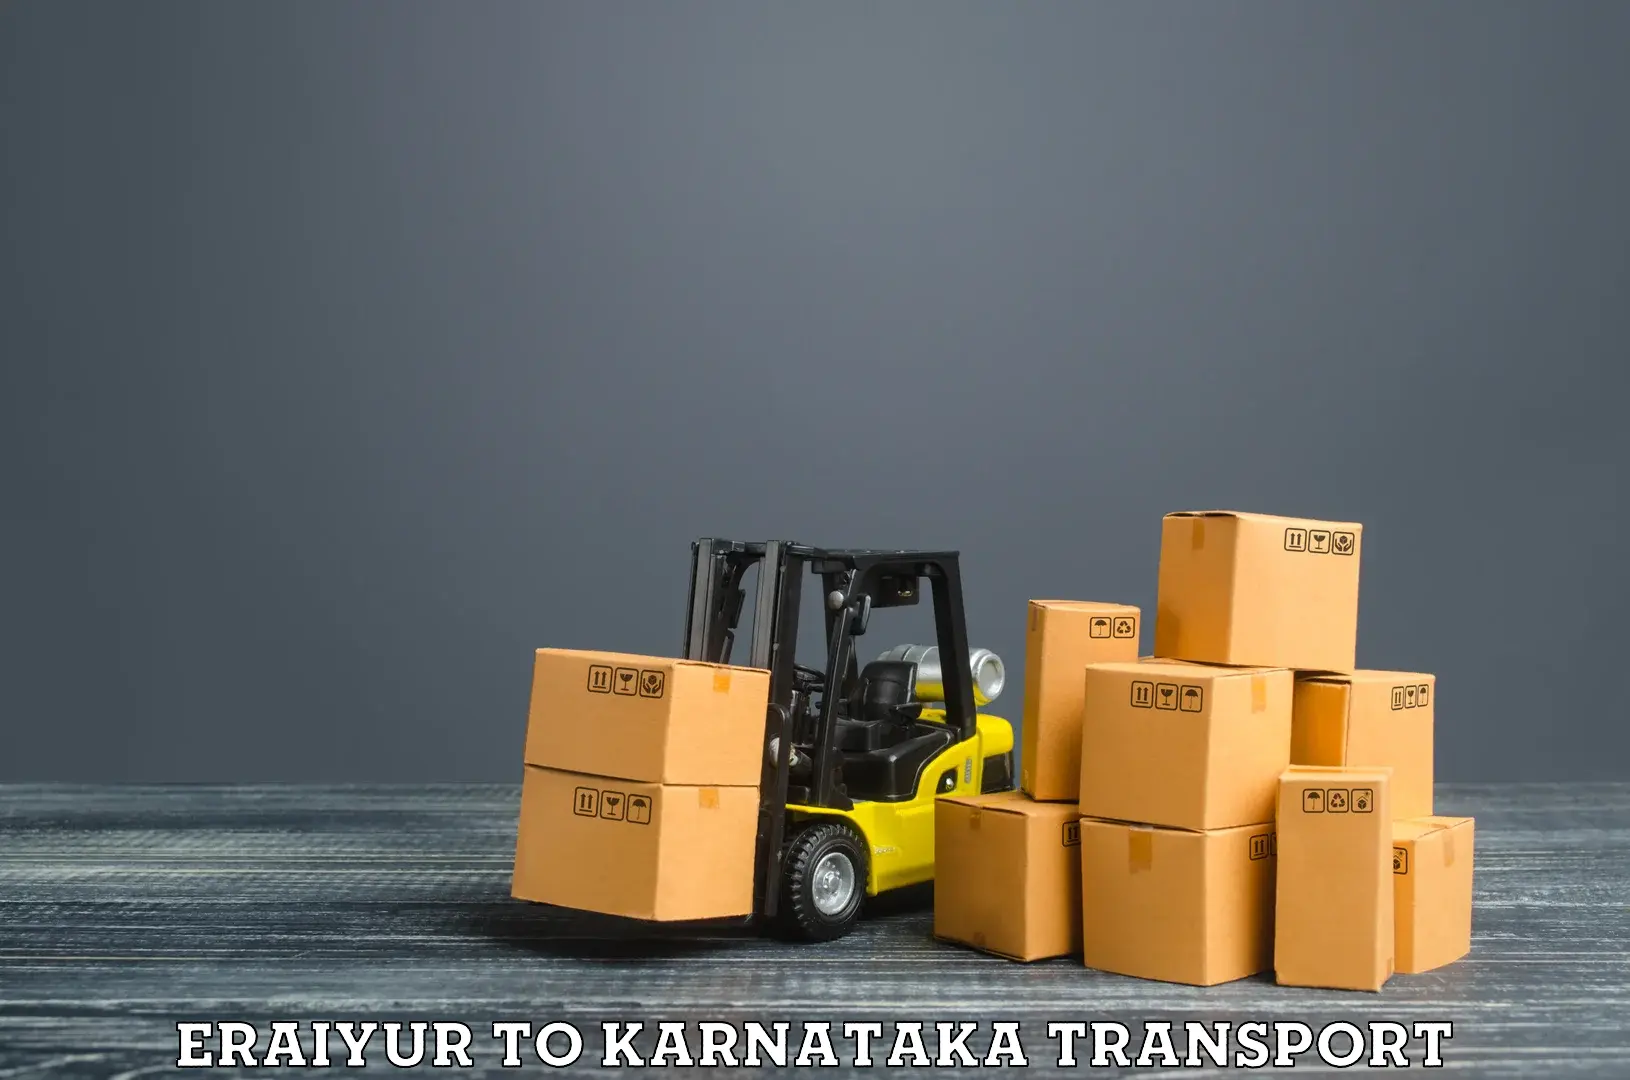 Lorry transport service Eraiyur to Bhadravathi